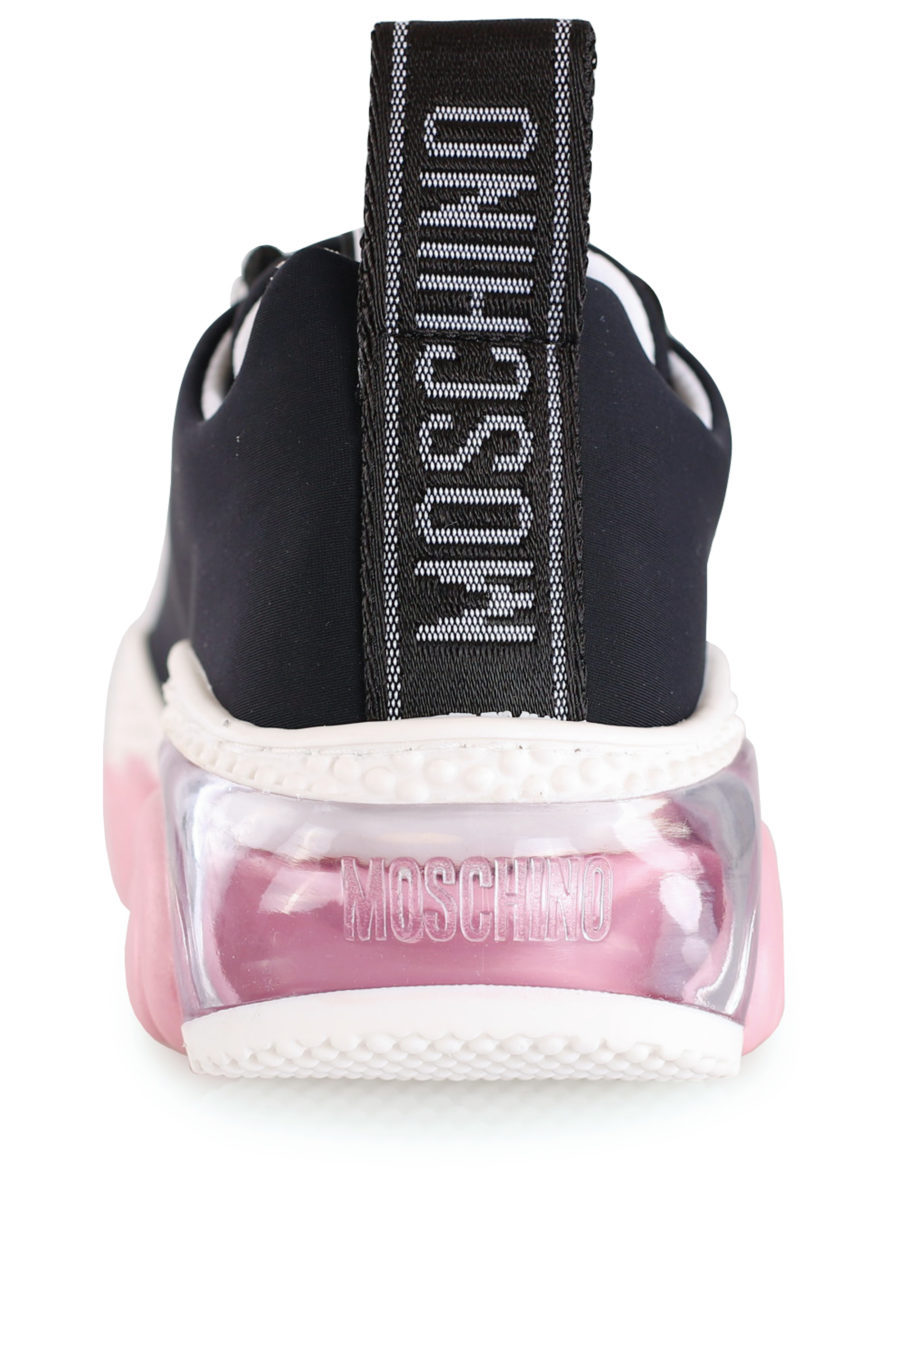 Zapatillas negras con suela color rosa - IMG 8134 copia